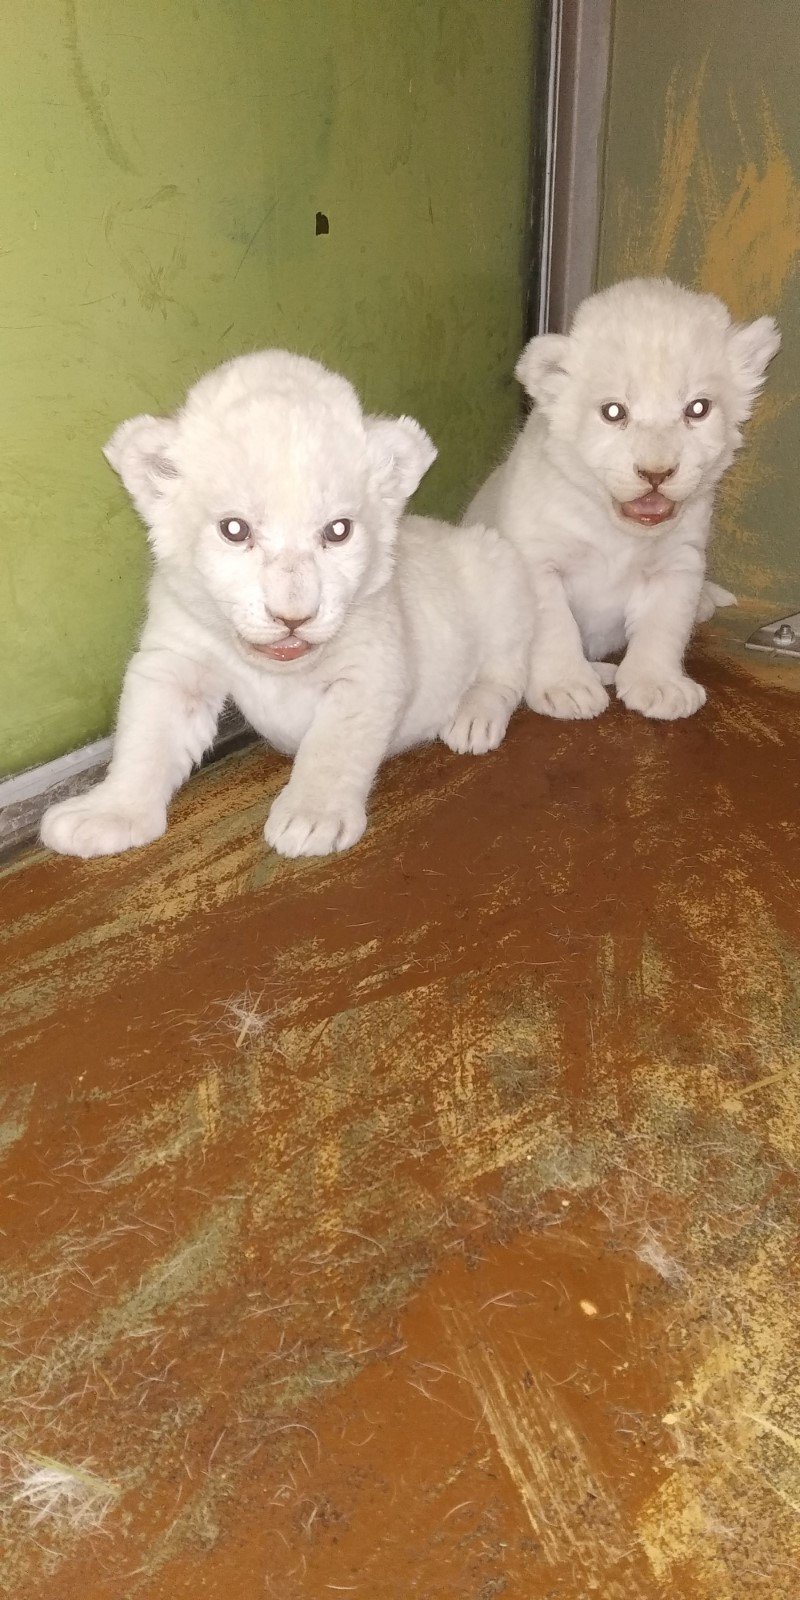 V hodonínské zoo se 13. prosince 2018 narodila mláďata lvů jihoafrických. Jde o dvě samičky, které mají navíc vzácnou smetanově bílou barvu.